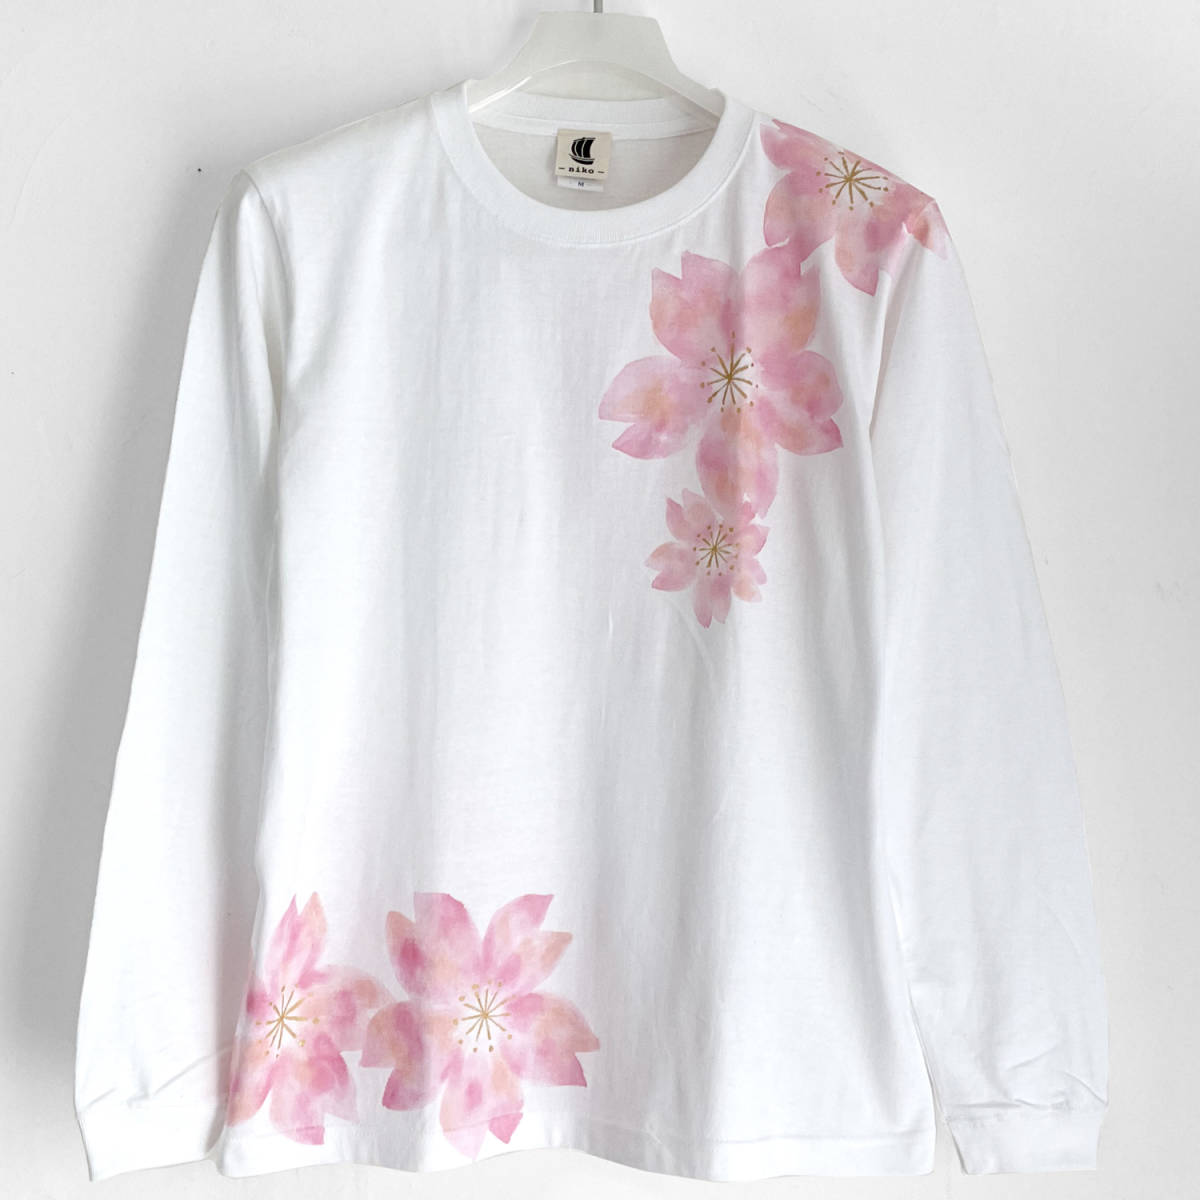 사쿠라 패턴 티셔츠, 하얀색, S 사이즈, 핸드 페인팅 긴팔 티셔츠, 골지 소매, 긴 티셔츠, 꽃무늬, 일본식 디자인, 분홍색, 티셔츠, 긴팔, S 사이즈